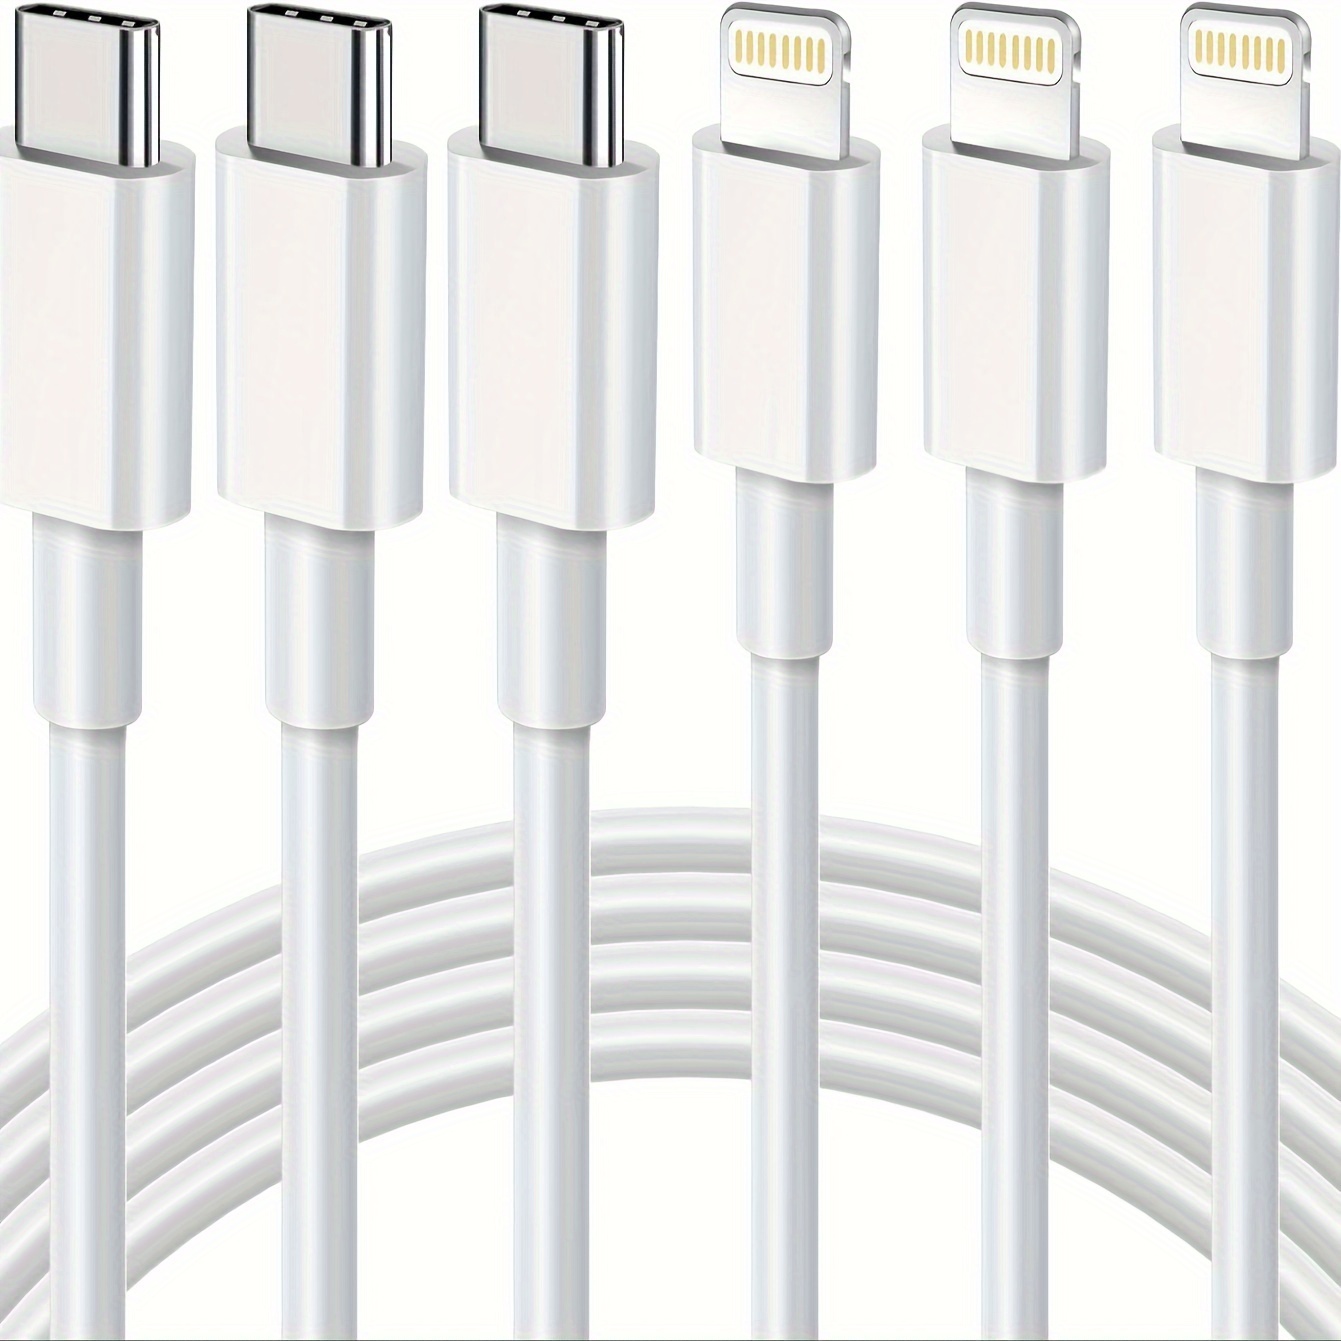 Cable corto USB C a Lightning de 0.5 pies, [certificado Apple MFi] USB C  para iPhone, cable de carga rápida compatible con iPhone 13/13 Pro/12/12